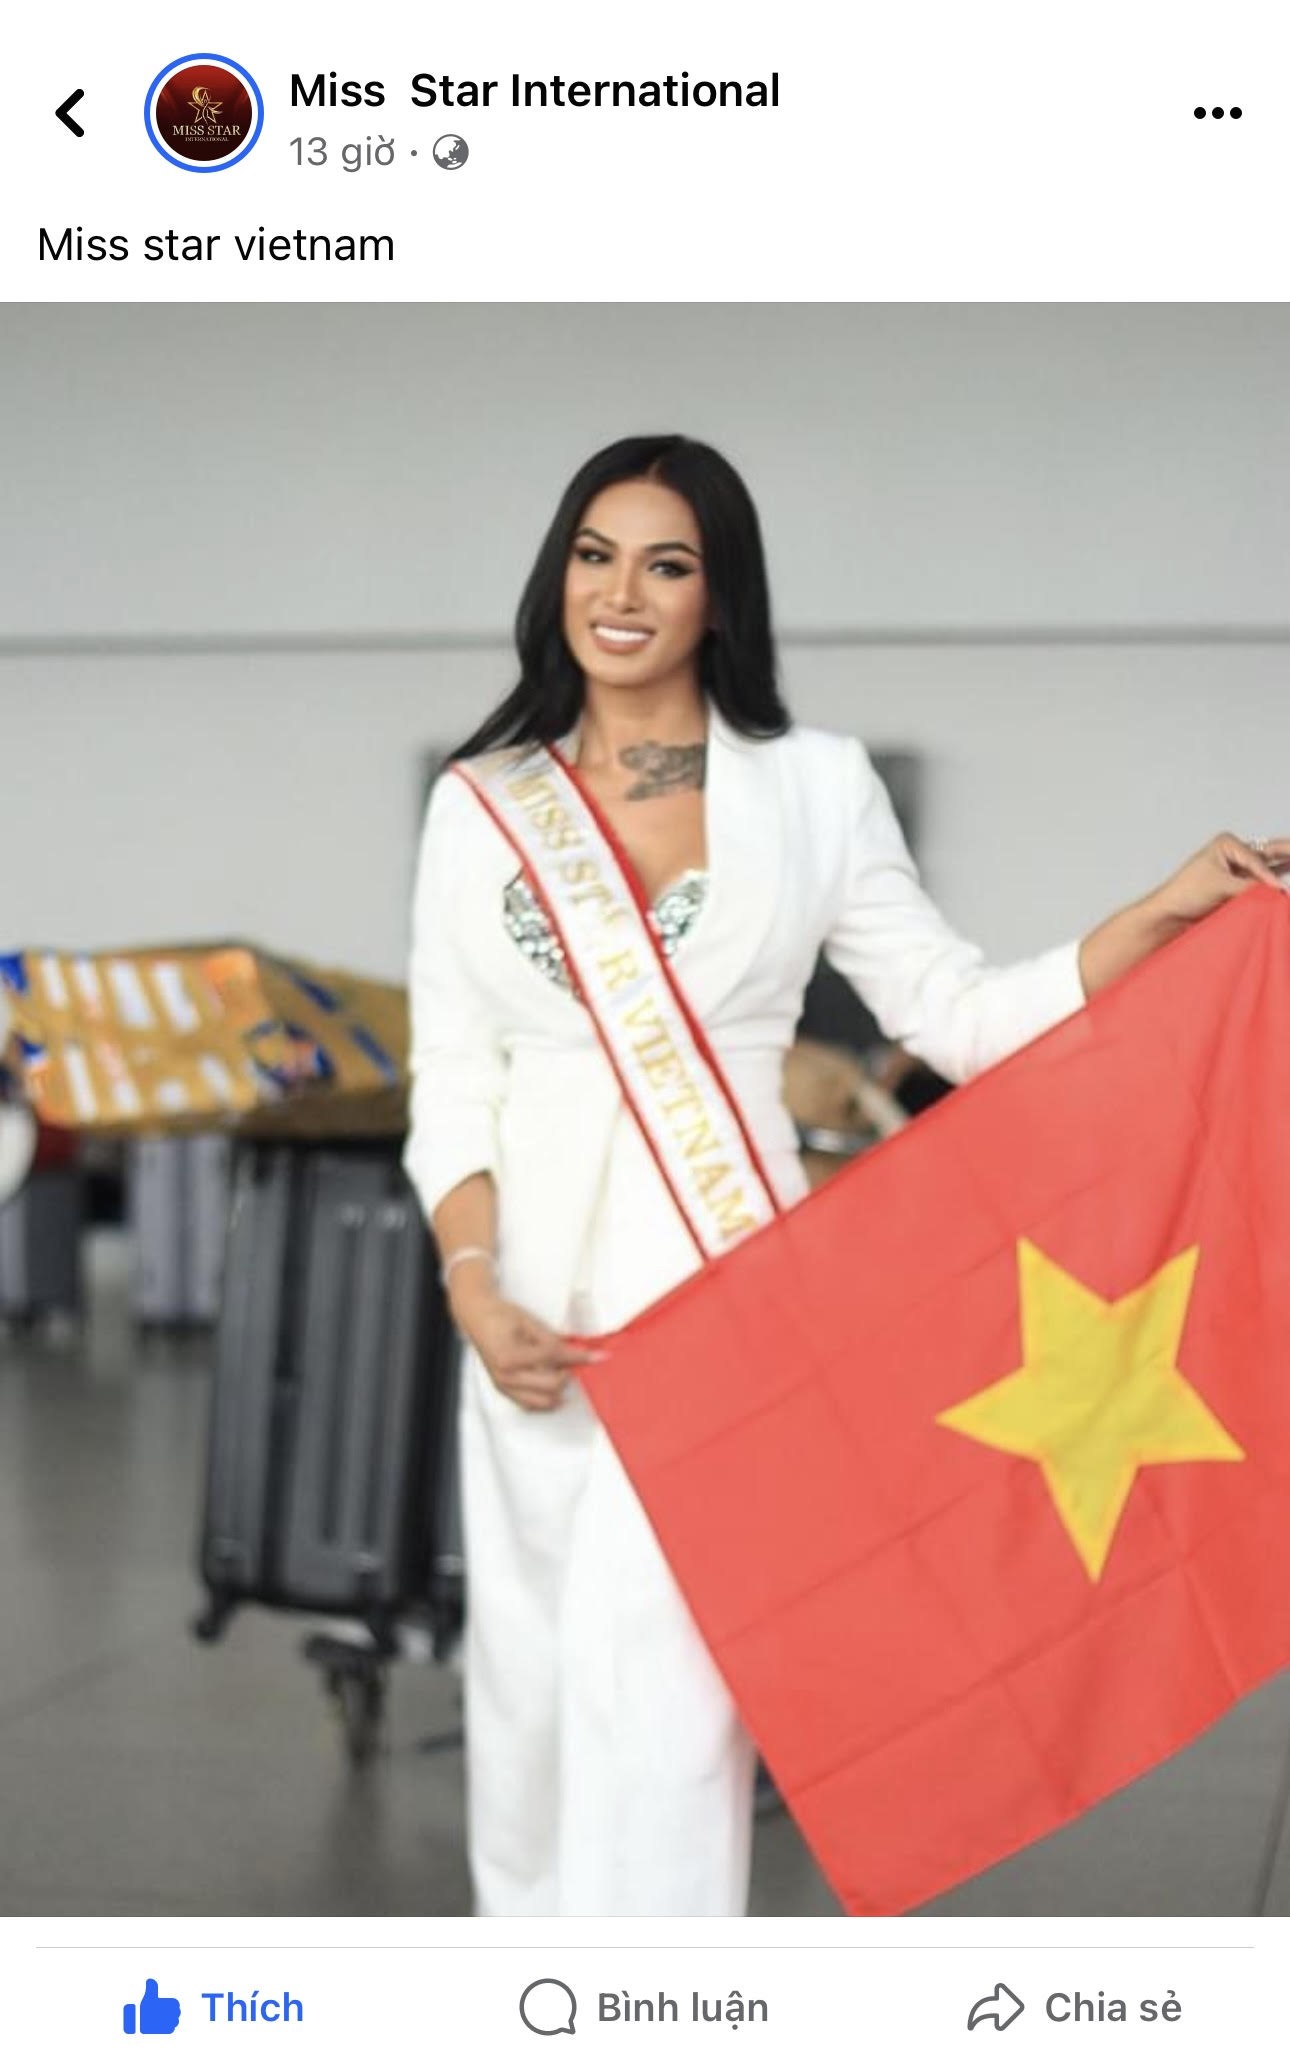  Kim Kim lên đường tham dự Miss Star International